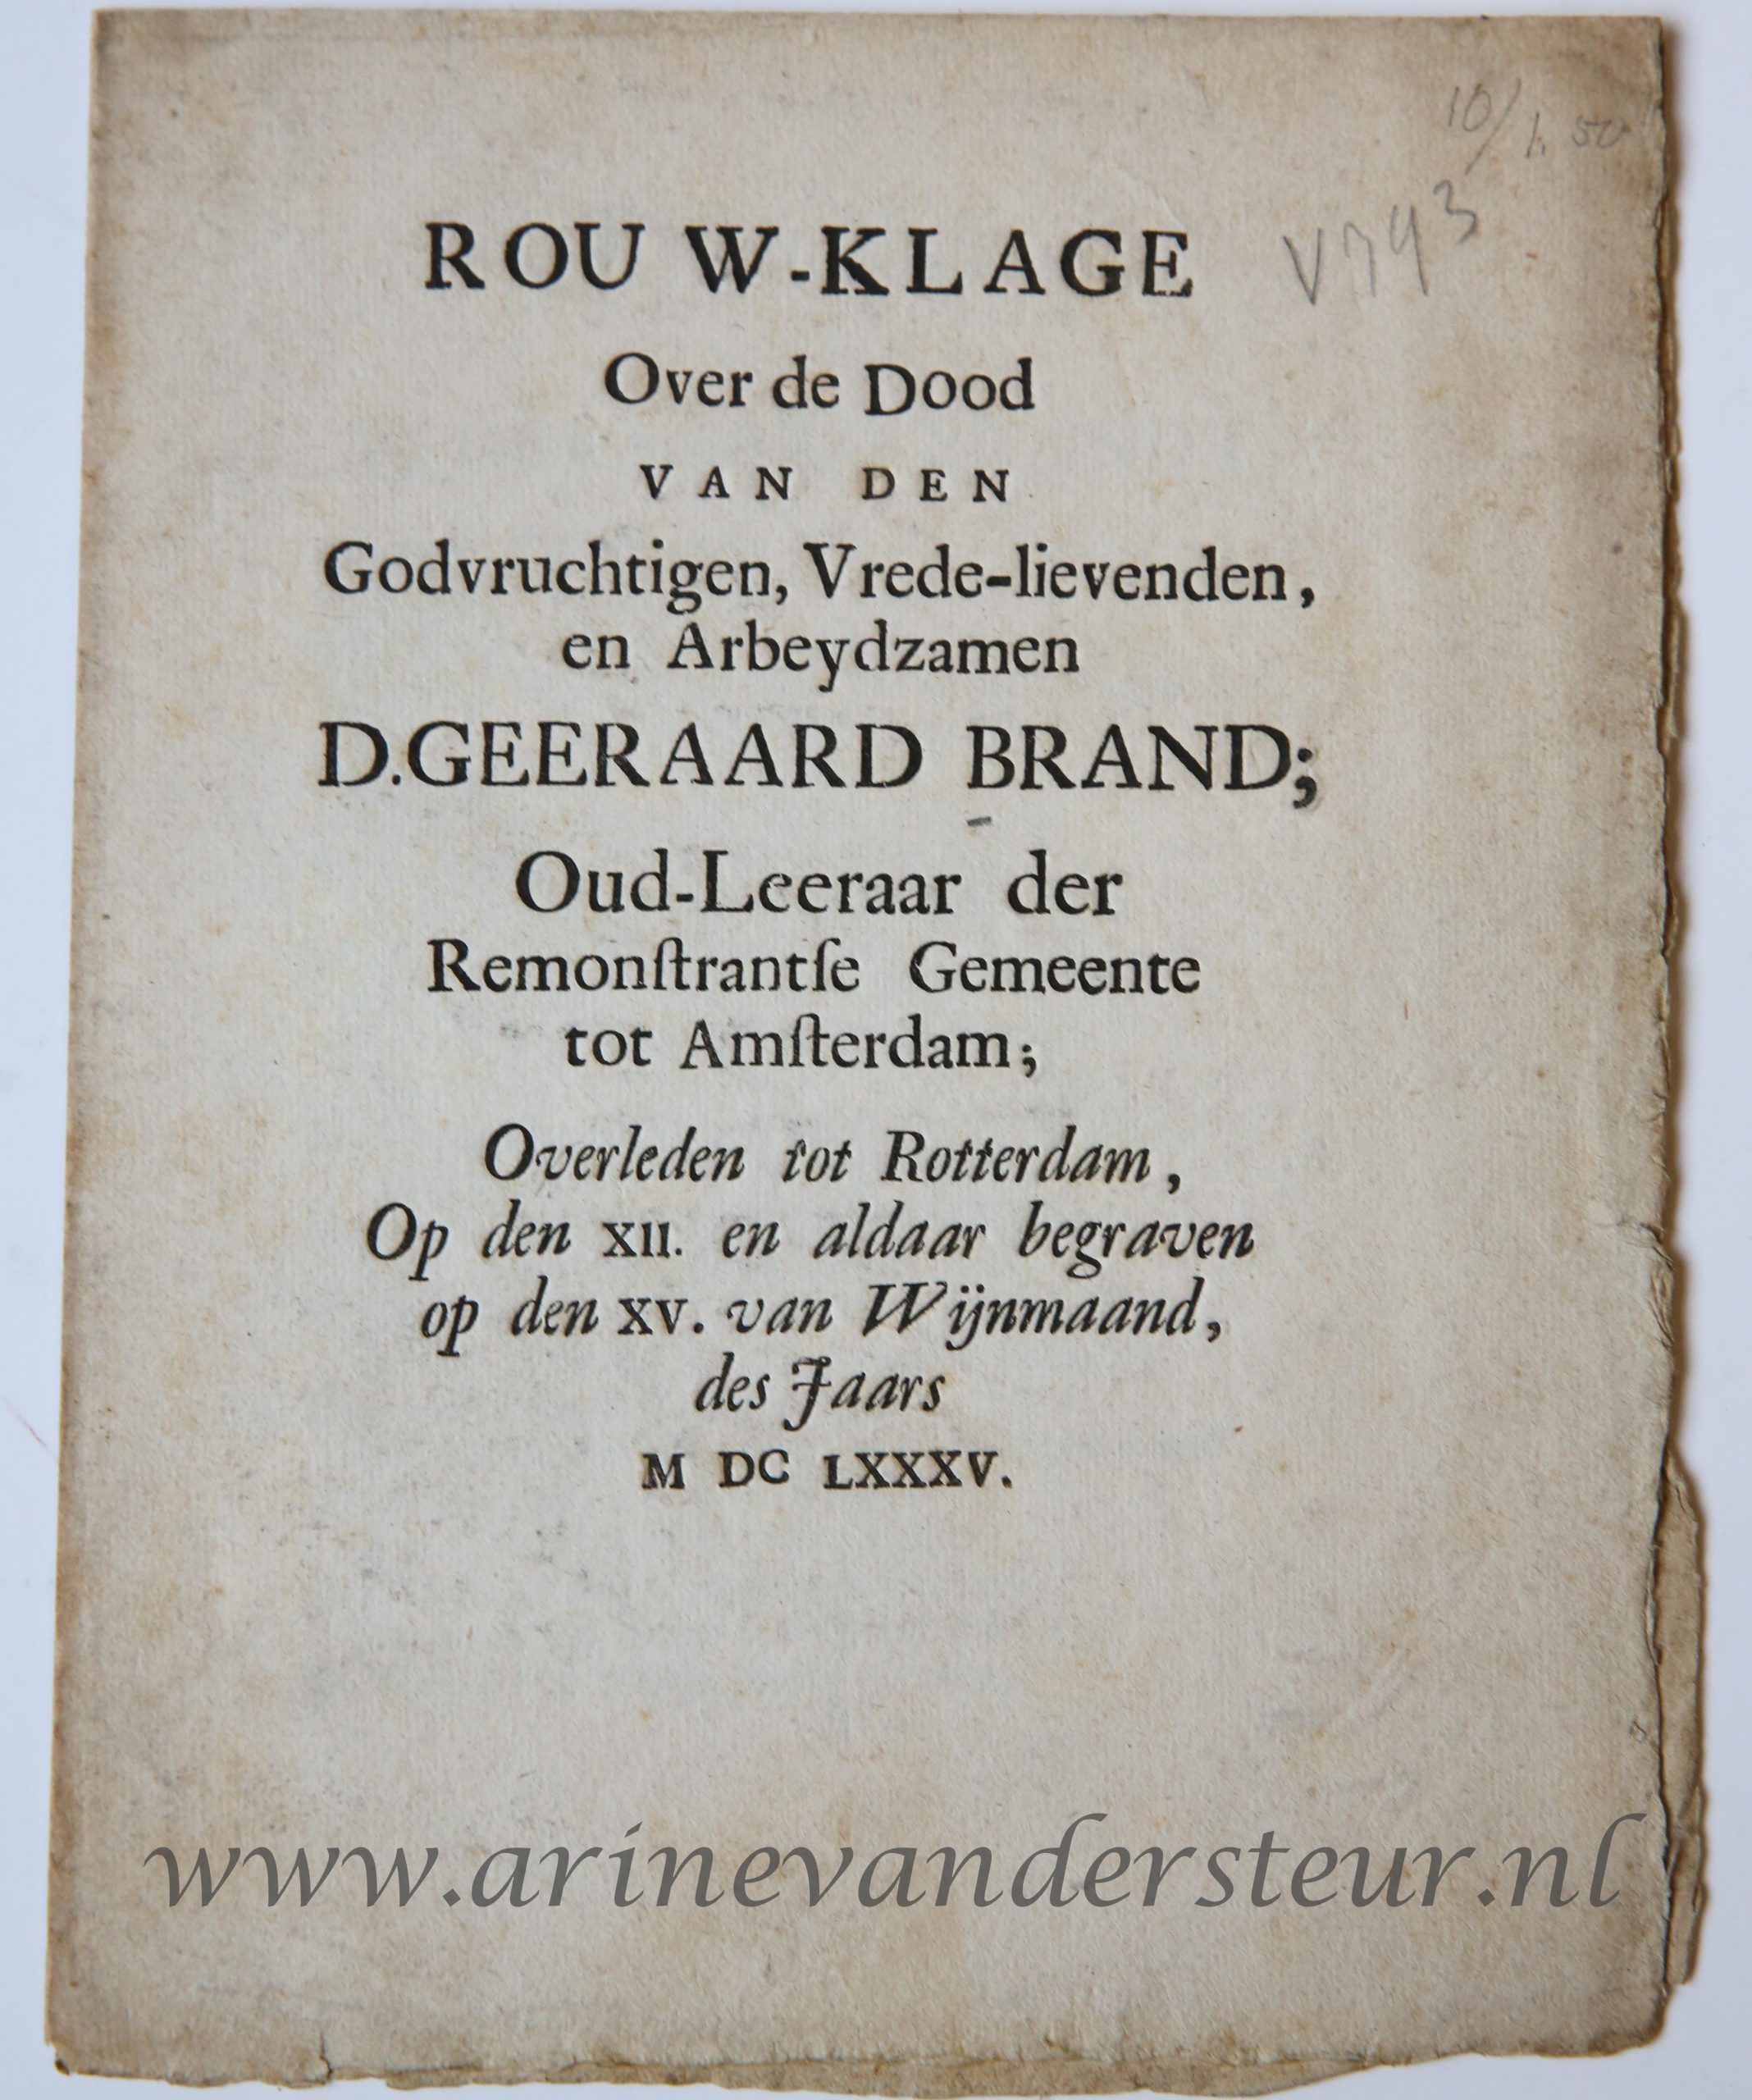  - Rouw-klage over de dood van ... D. Geeraard Brand, oud-leeraar der Remonstrantse Gemeente tot Amsterdam, overleden tot Rotterdam, op den 12 en aldaar begraven op den 15 van wijmaand des jaars 1685. z.p. 4: [8] p.